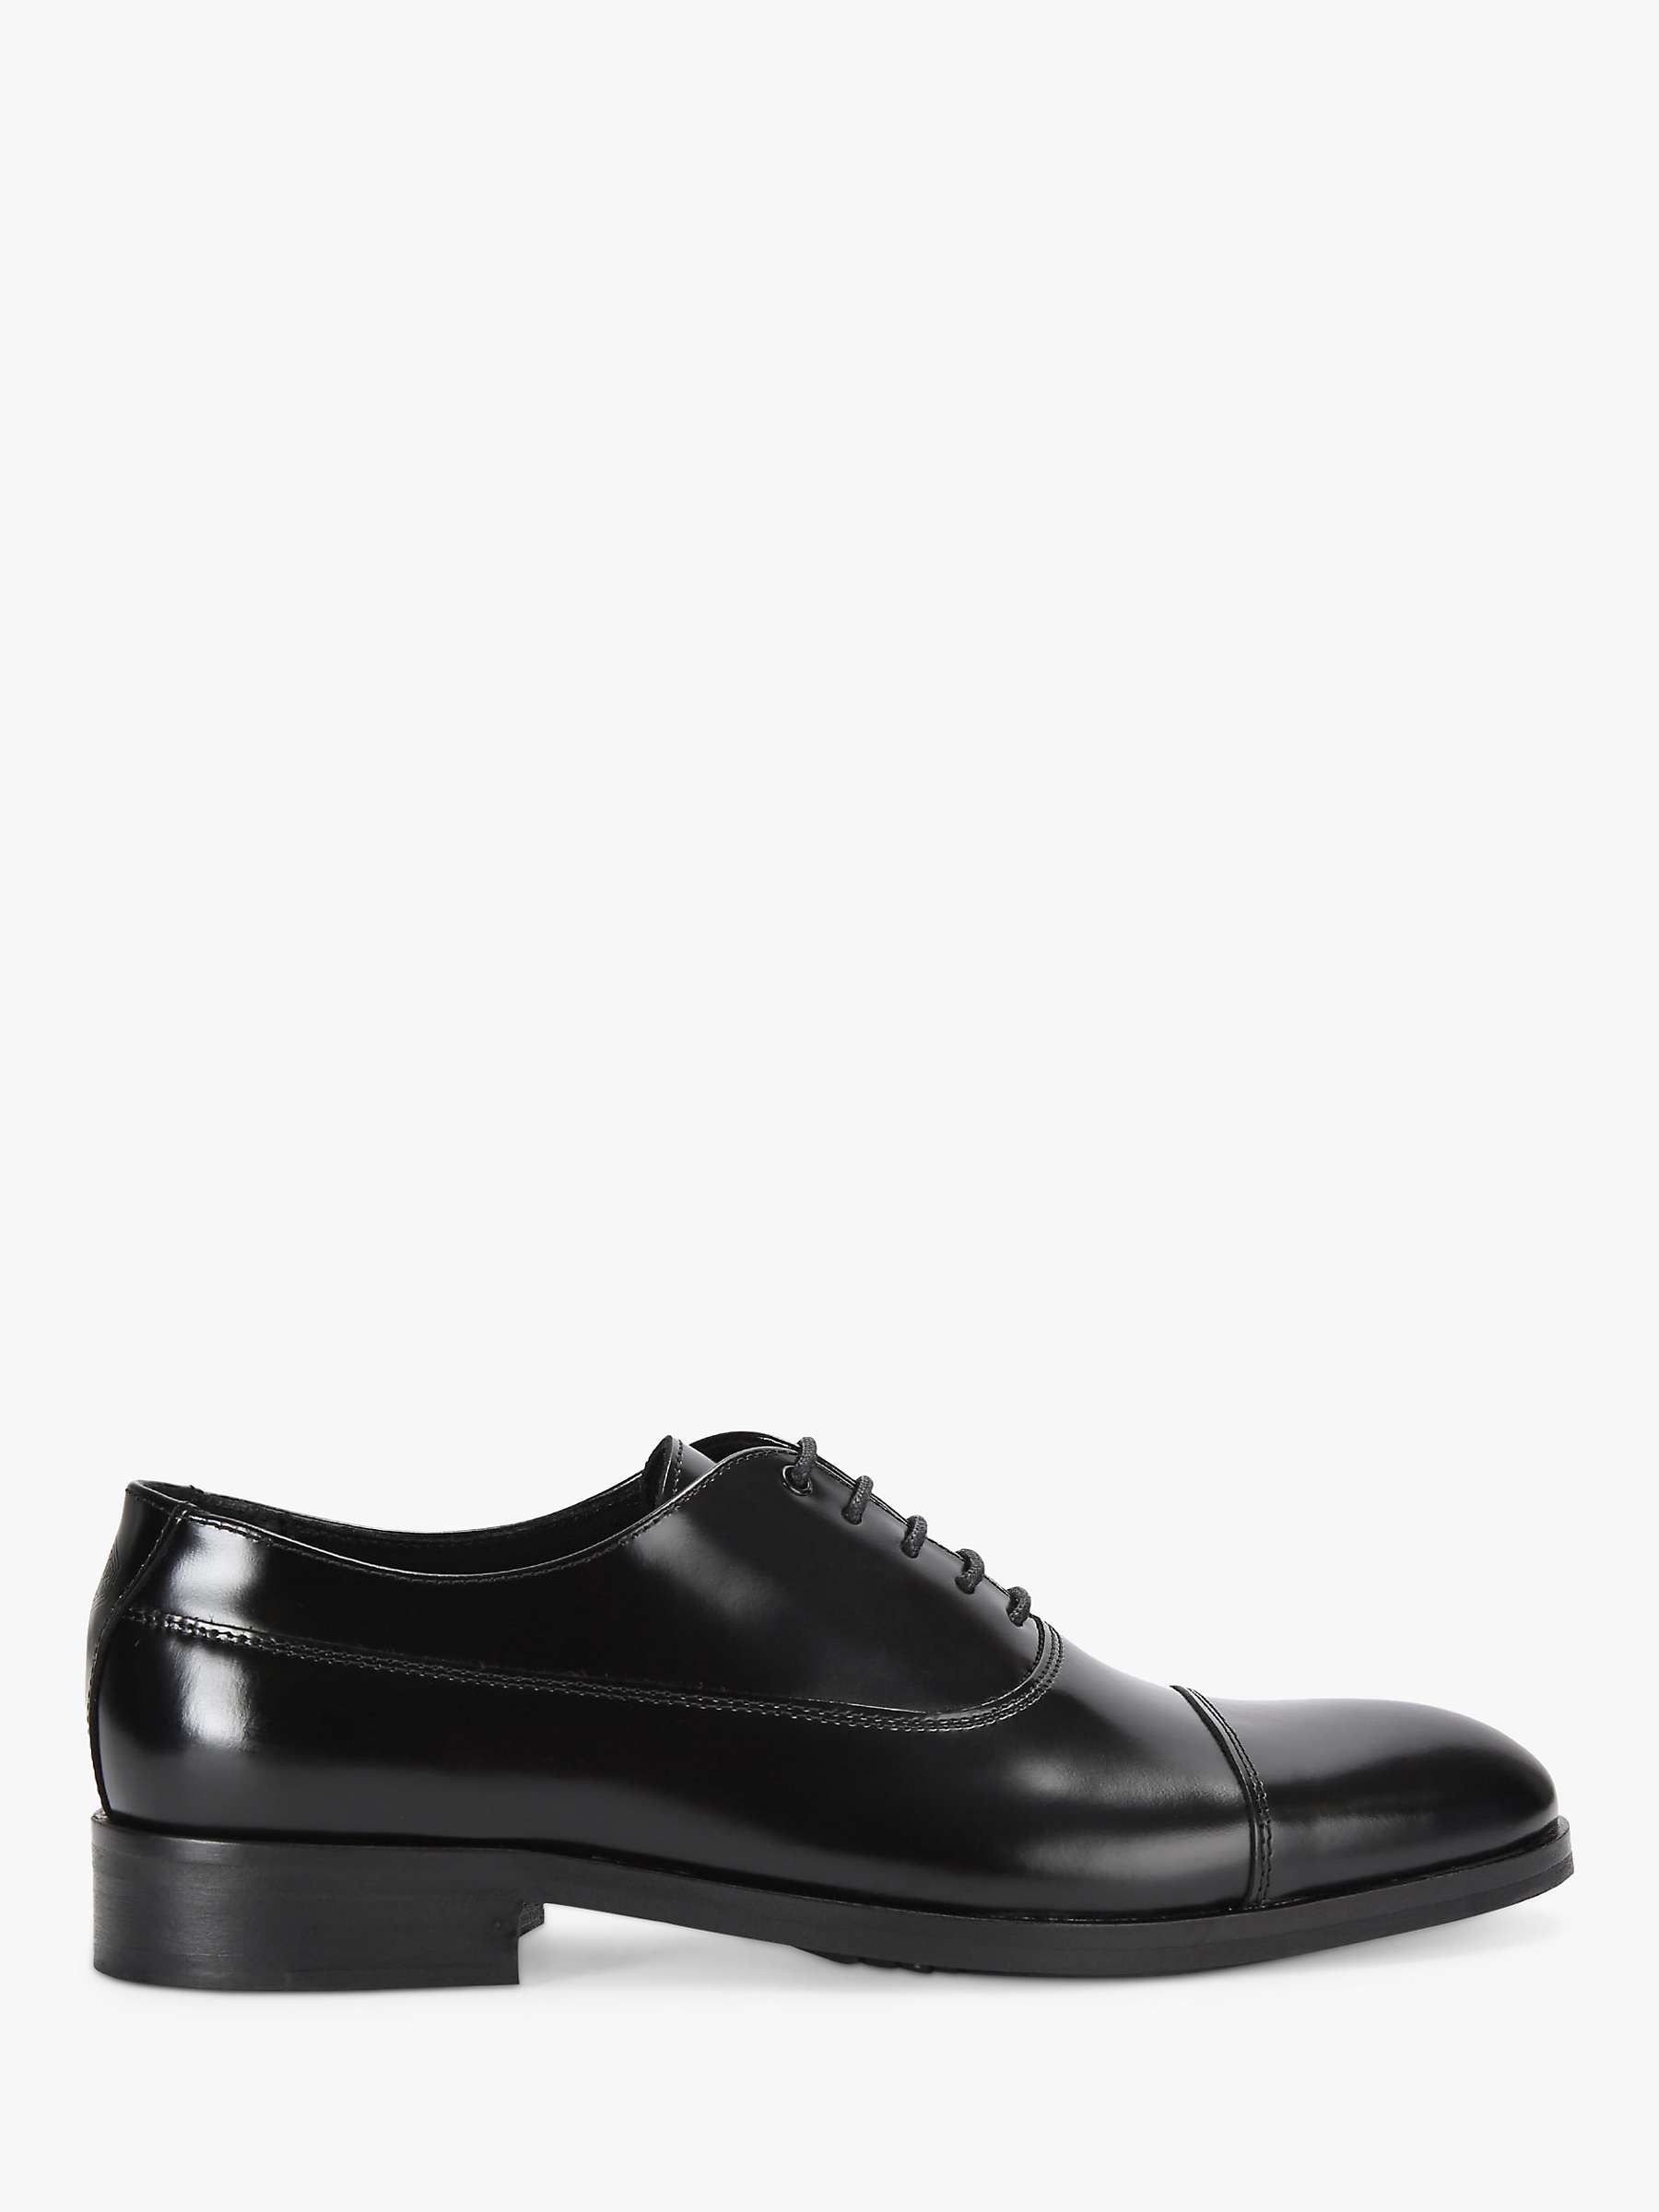 Buy Kurt Geiger London Hunter Oxford Shoes, Black Online at johnlewis.com